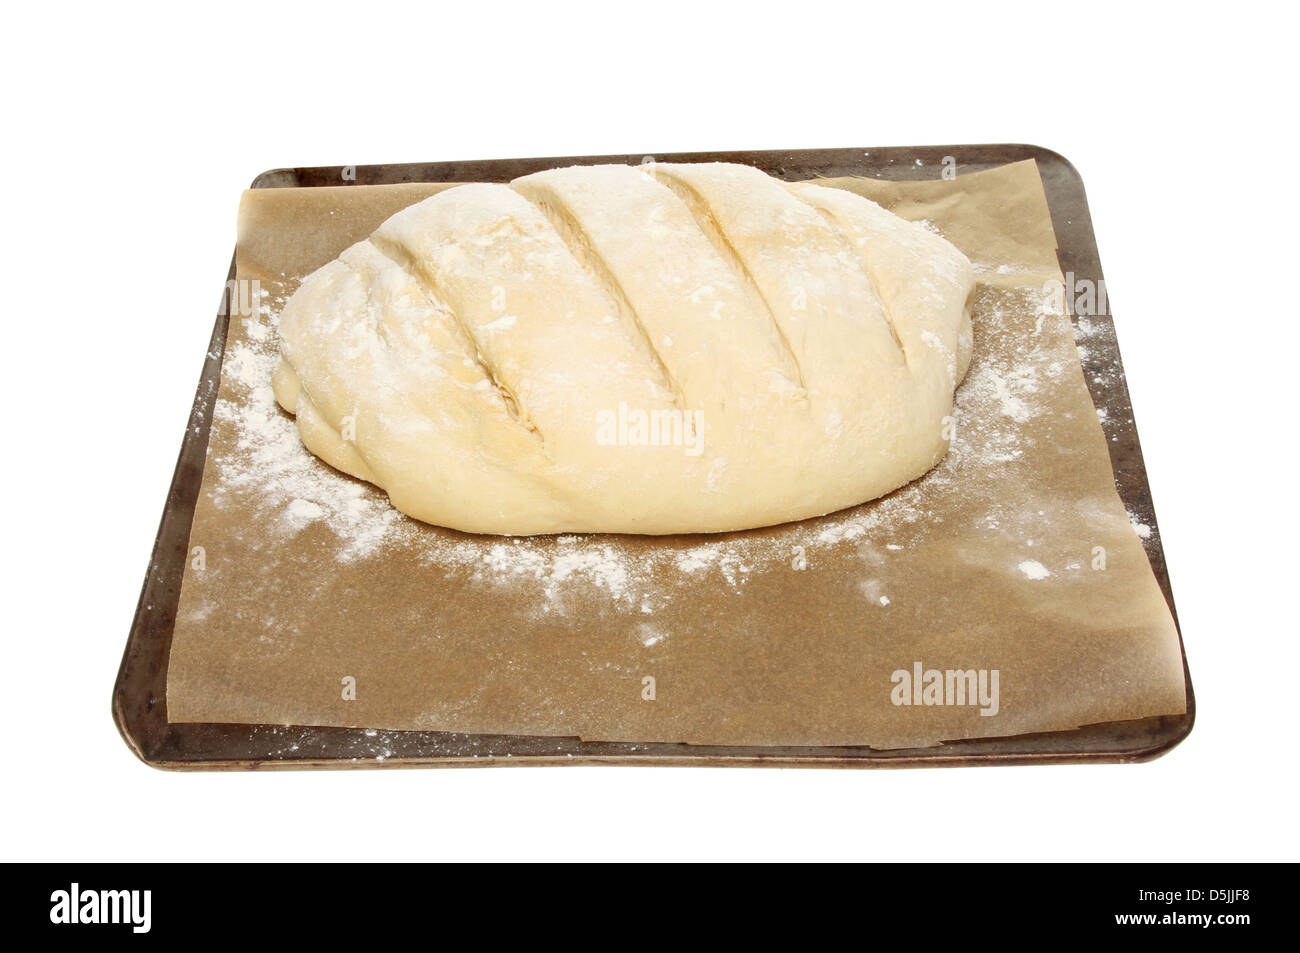 La preuve de la pâte de pain sur une tôle à biscuits isolated on white Banque D'Images